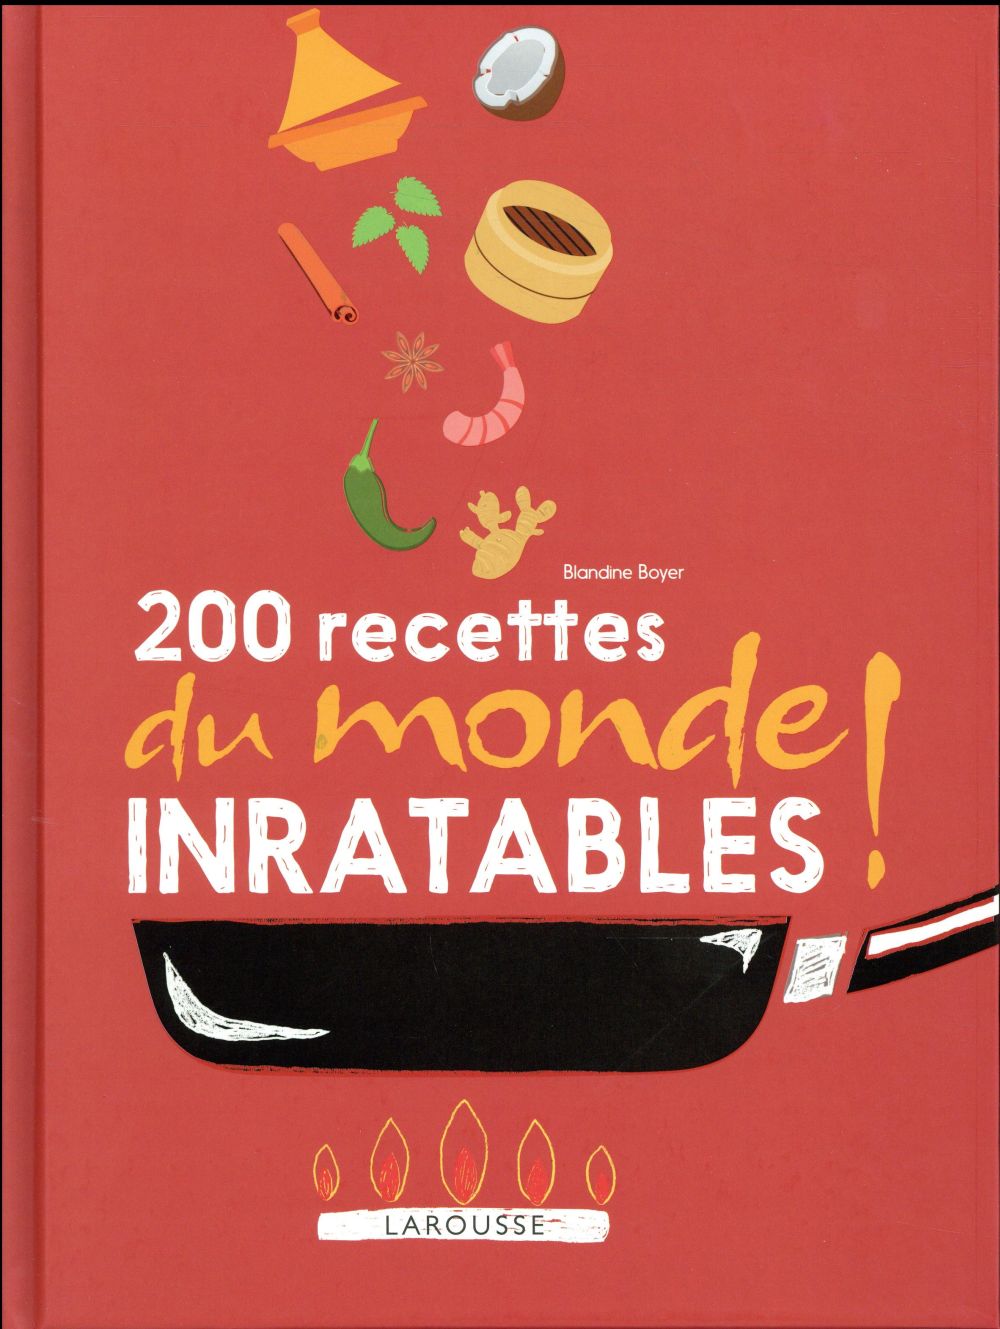 200 RECETTES DU MONDE INRATABLES !